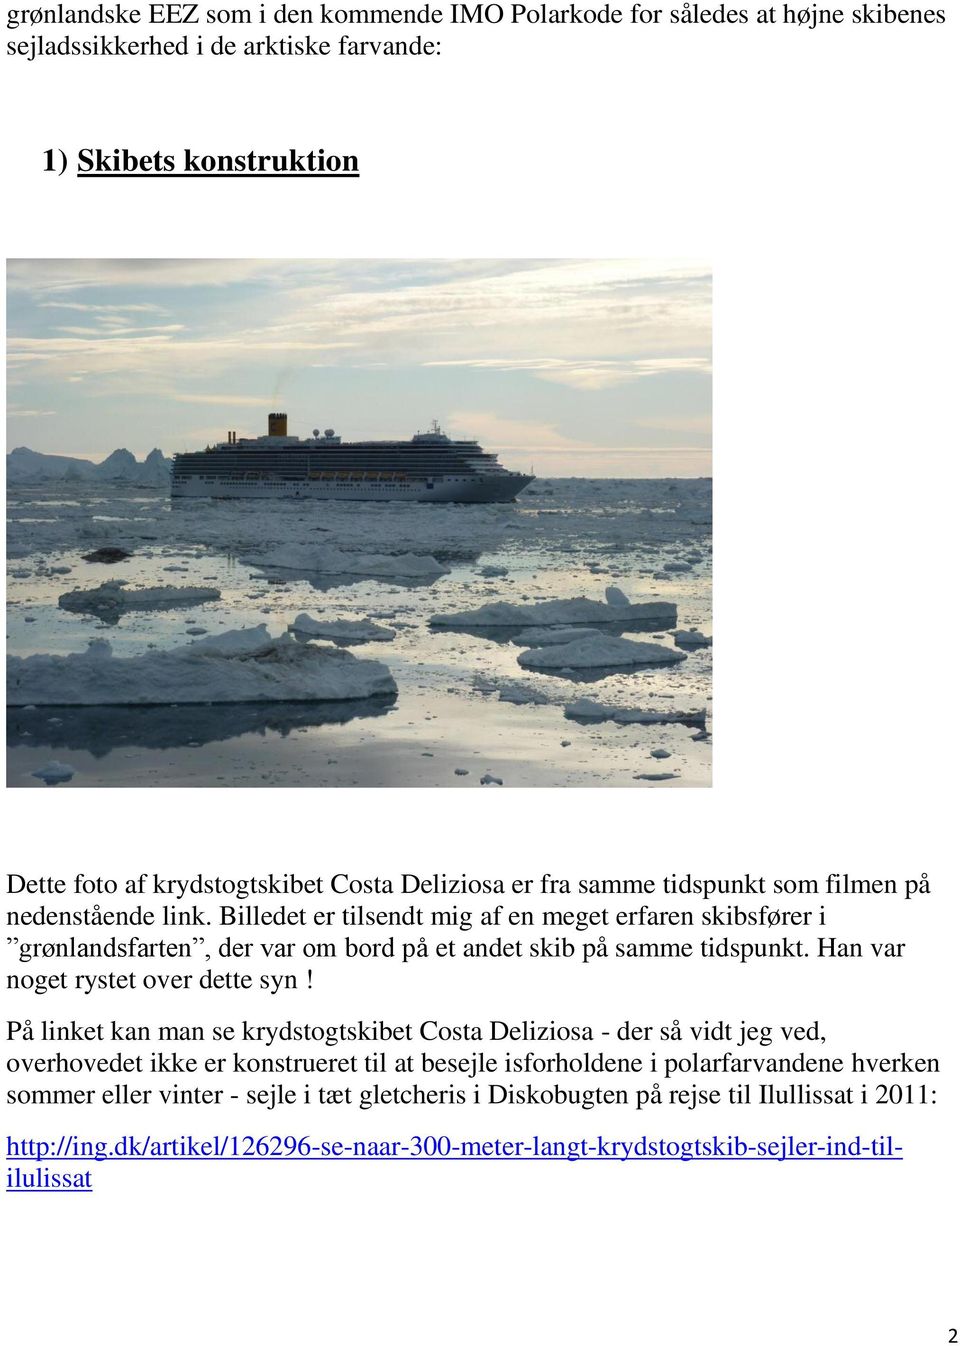 Billedet er tilsendt mig af en meget erfaren skibsfører i grønlandsfarten, der var om bord på et andet skib på samme tidspunkt. Han var noget rystet over dette syn!